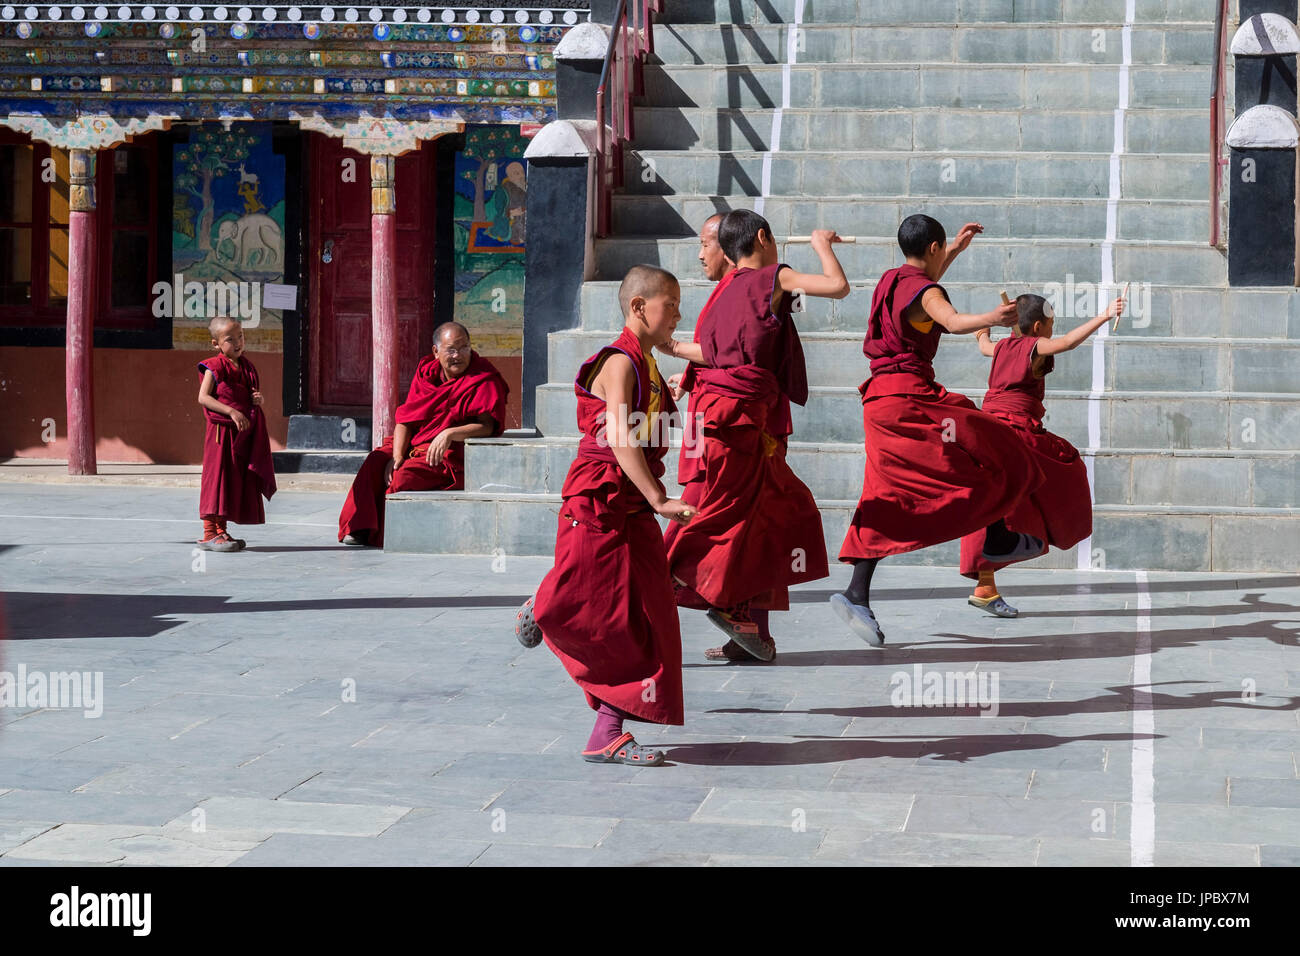 Le monastère de Thiksey, vallée de l'Indus, Ladakh, Inde, Asie. Les cours de danse avant le festival. Banque D'Images